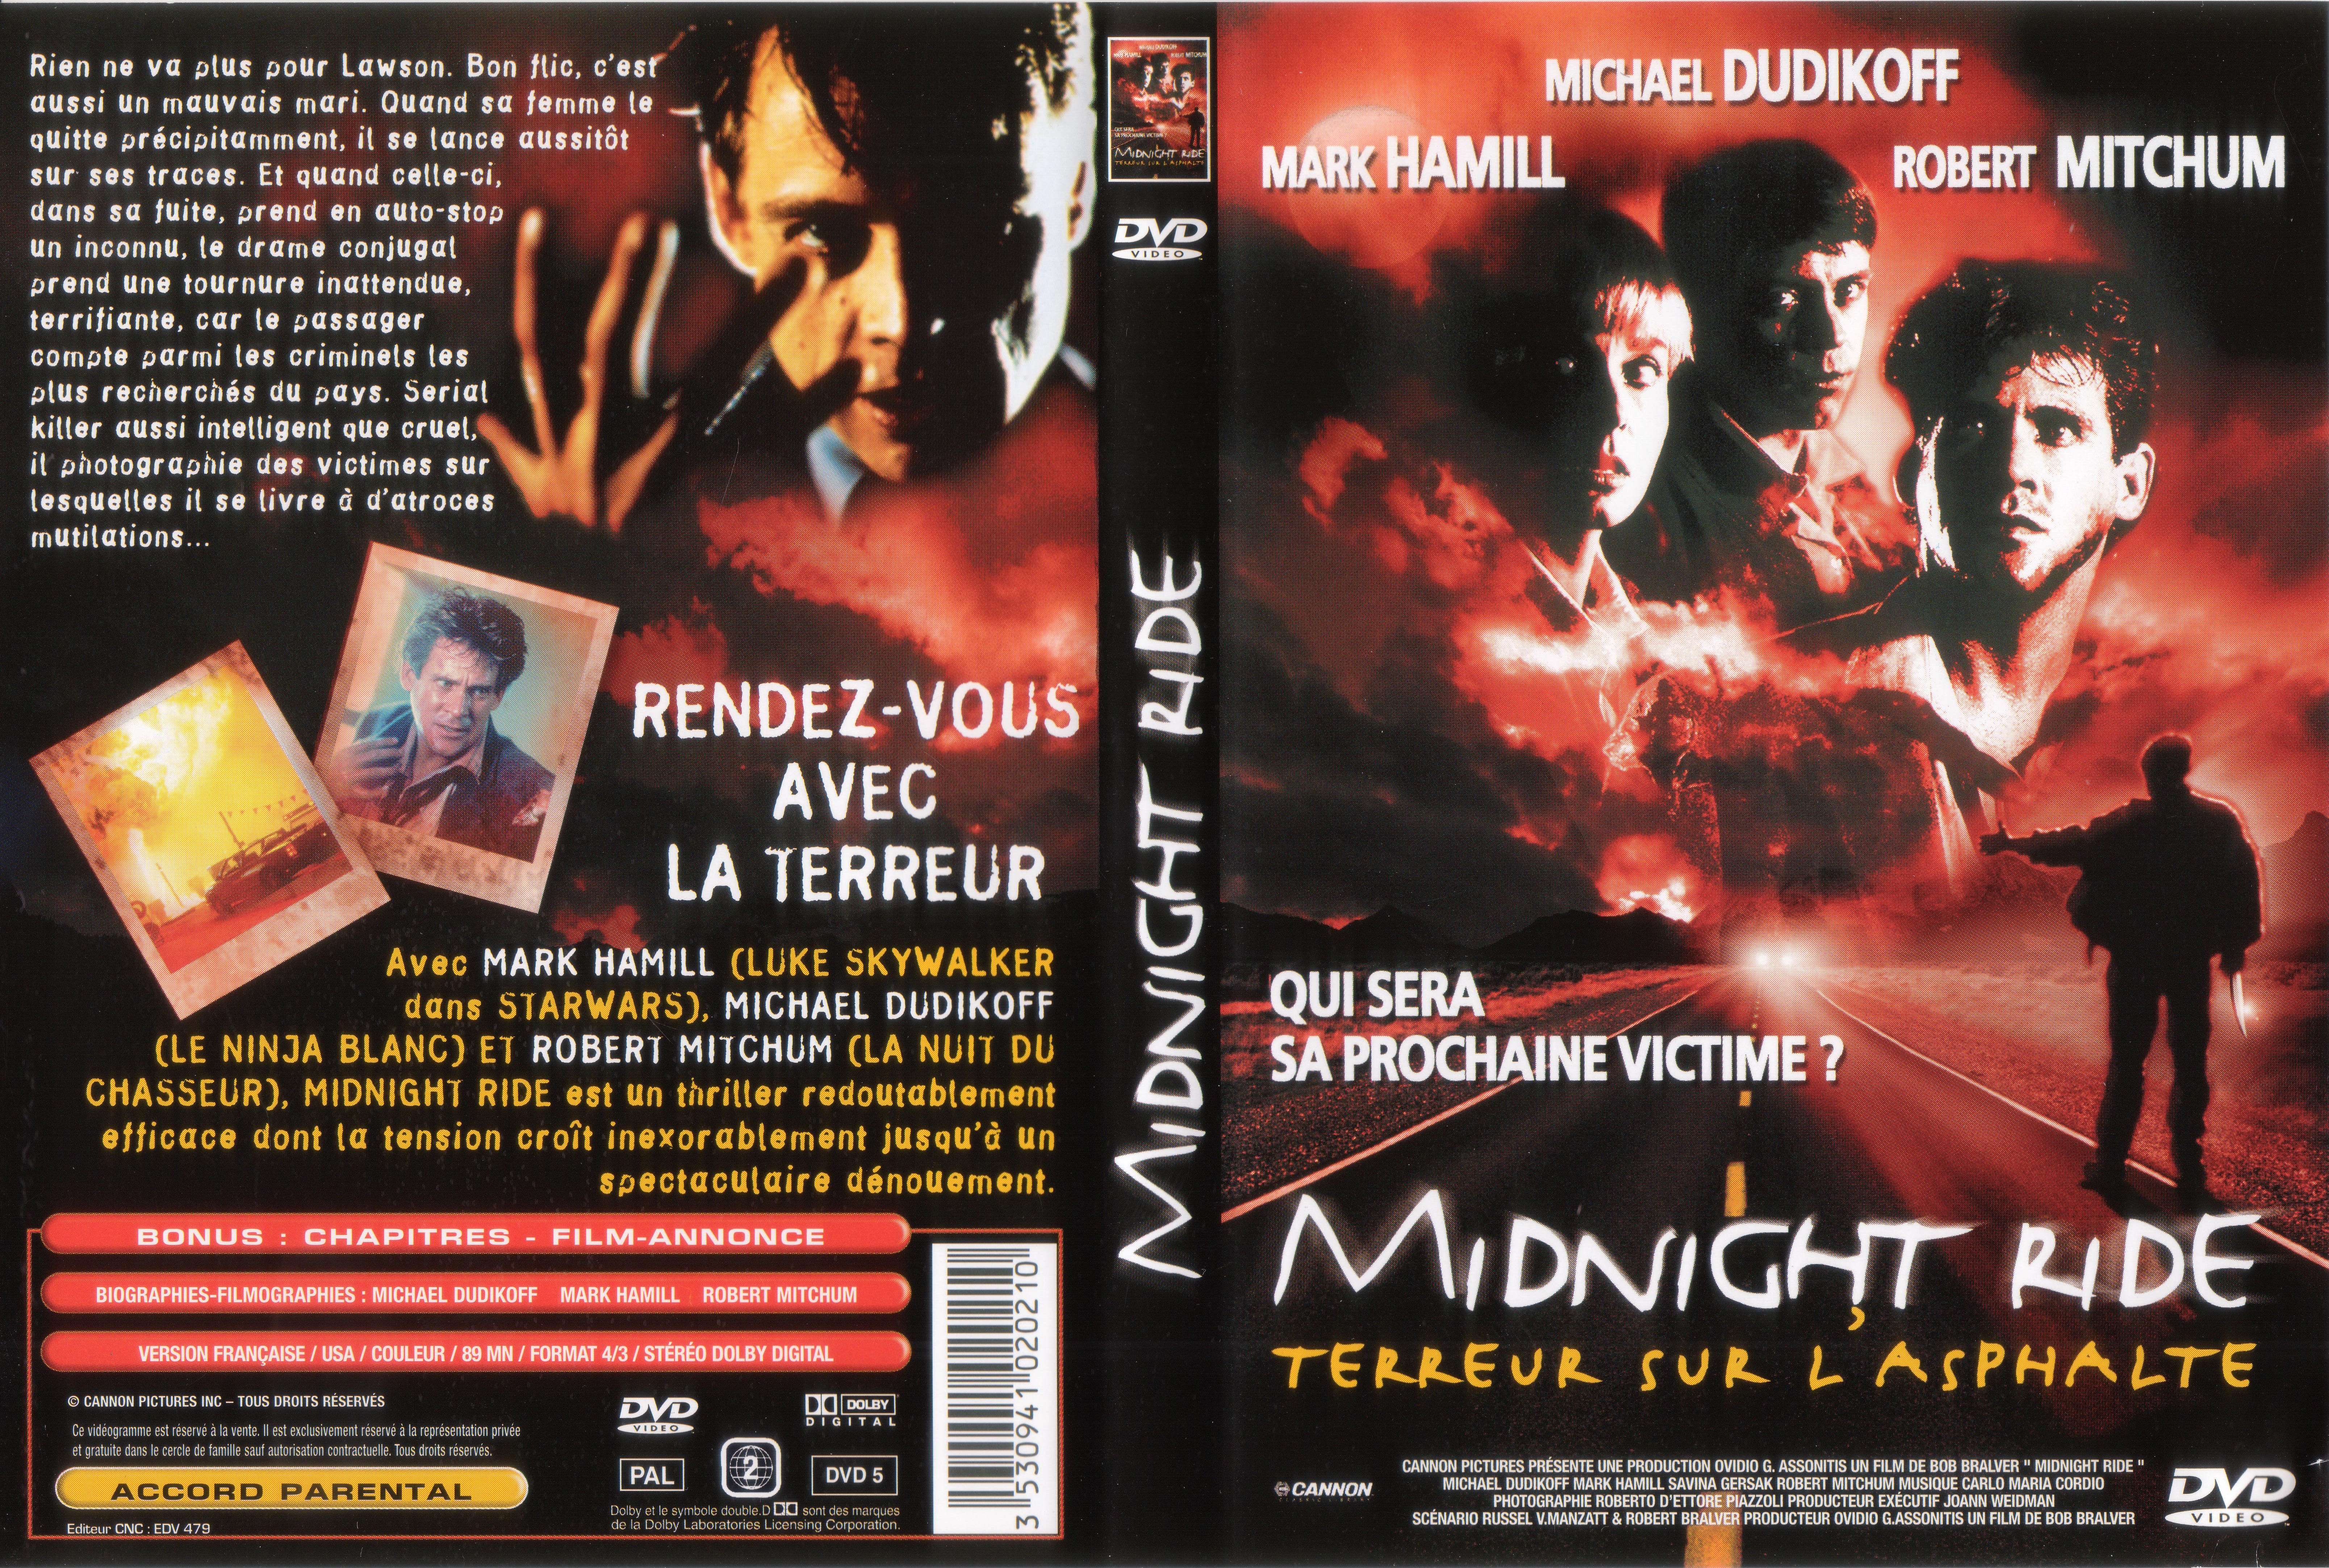 Jaquette DVD Midnight ride v2